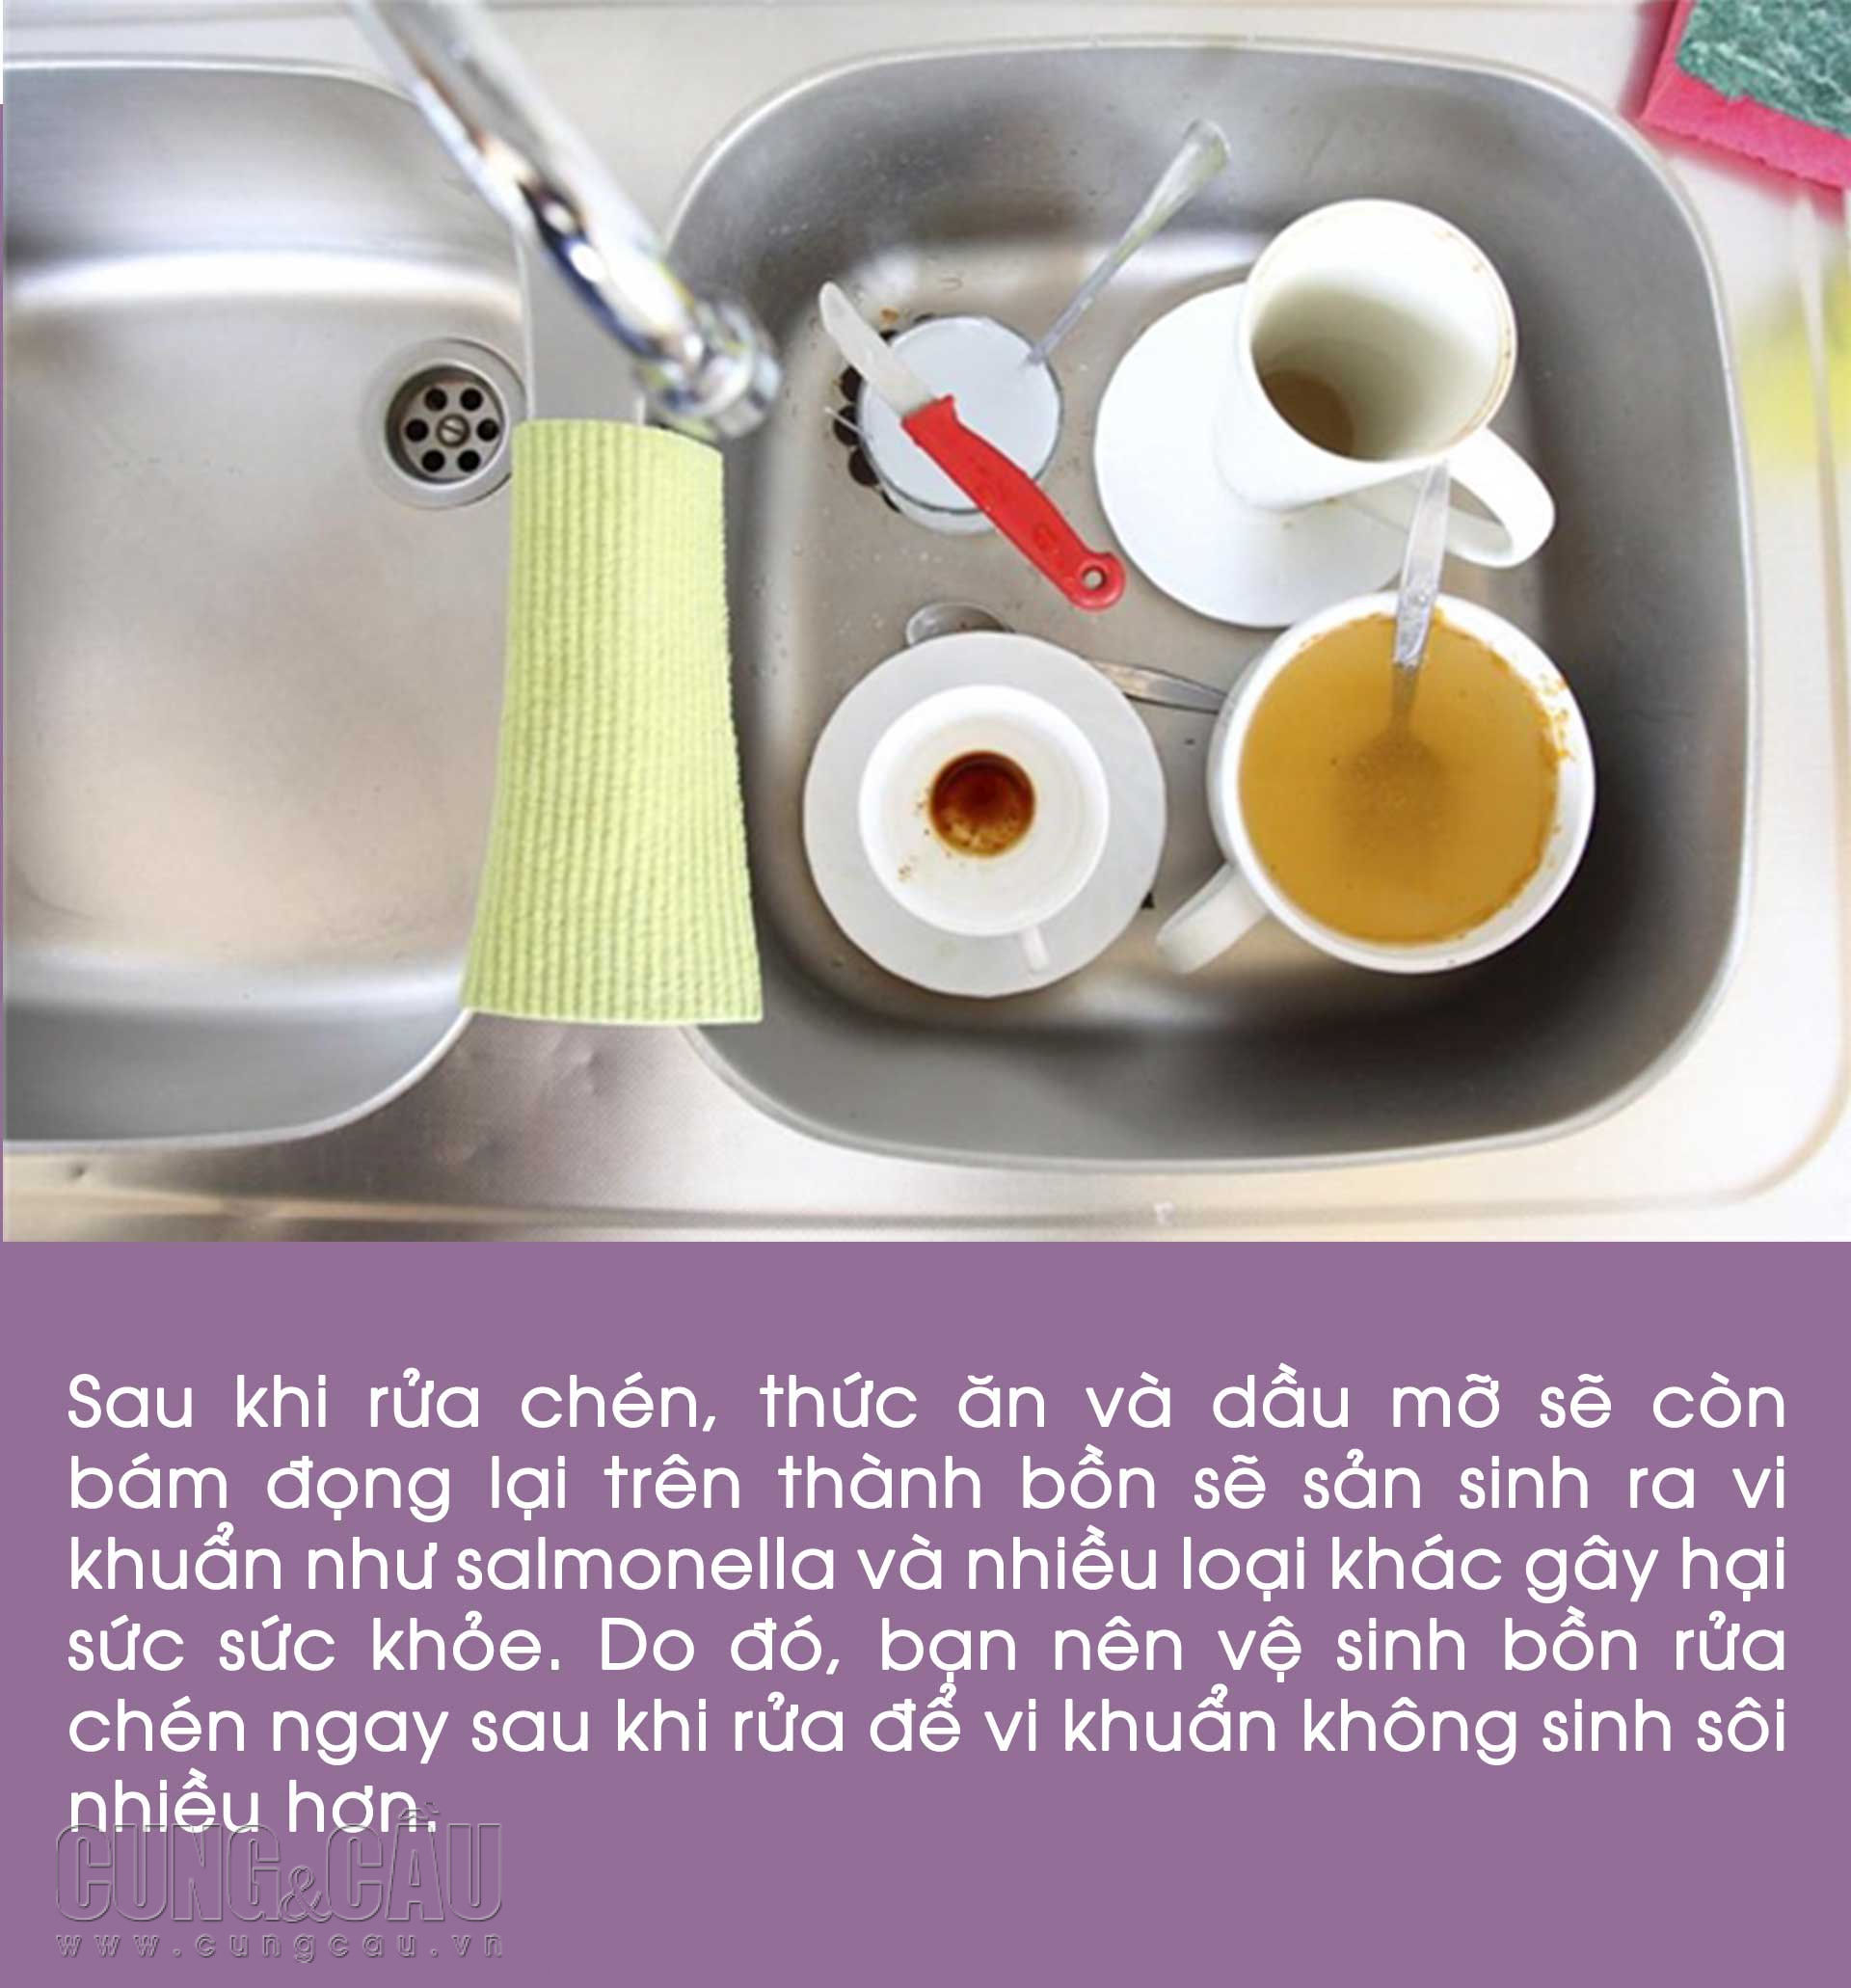 9 đồ dùng nhà bếp dễ bẩn và gây nguy hiểm trong căn bếp bạn thường bỏ qua